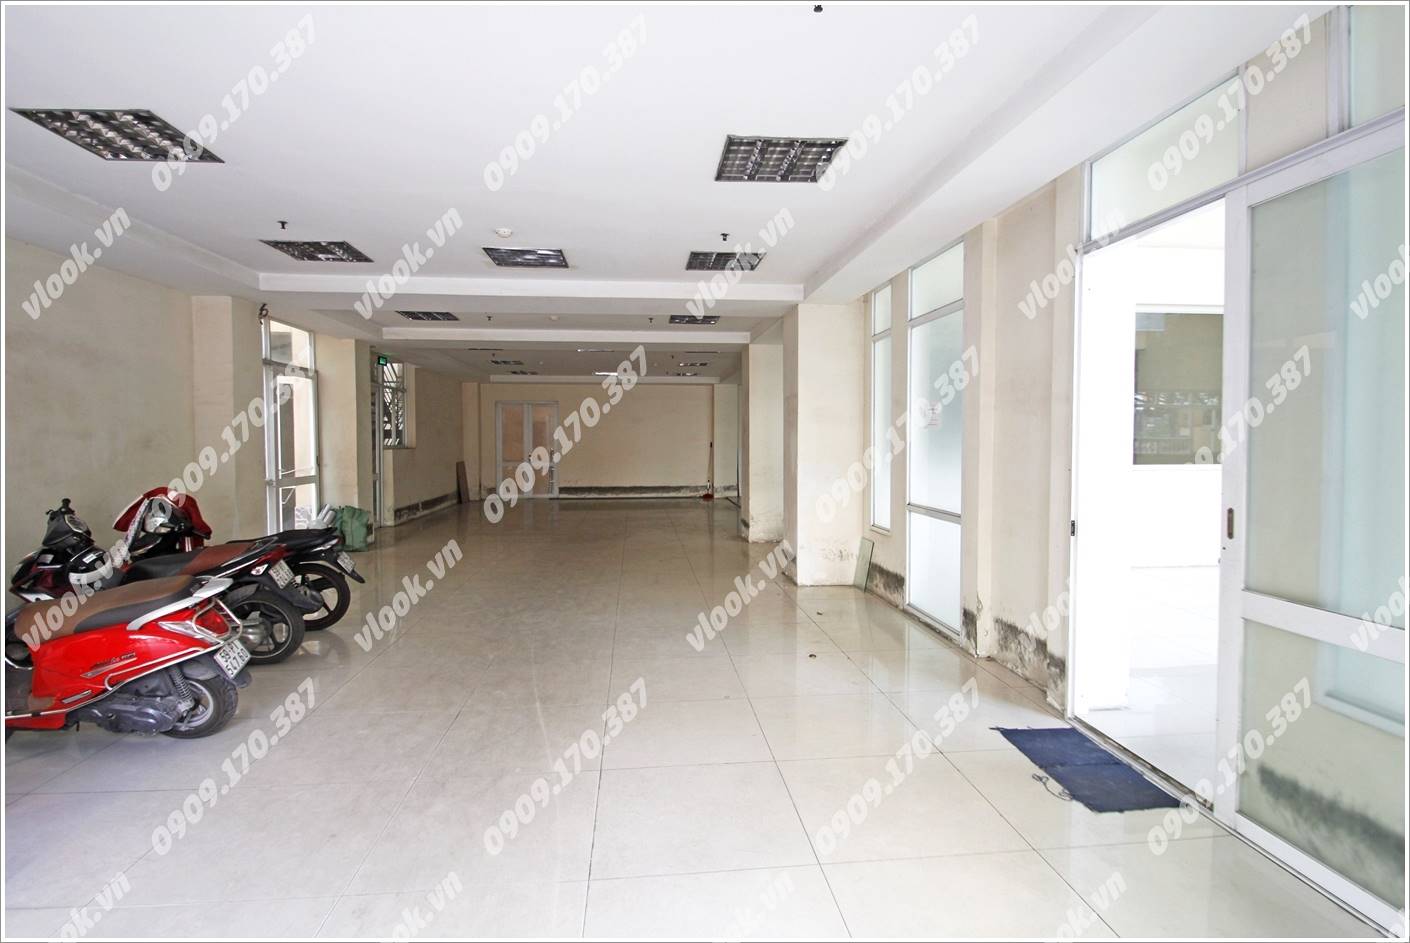 Cao ốc cho thuê văn phòng Halo Lê Trung Nghĩa Building, Quận Tân Bình - vlook.vn